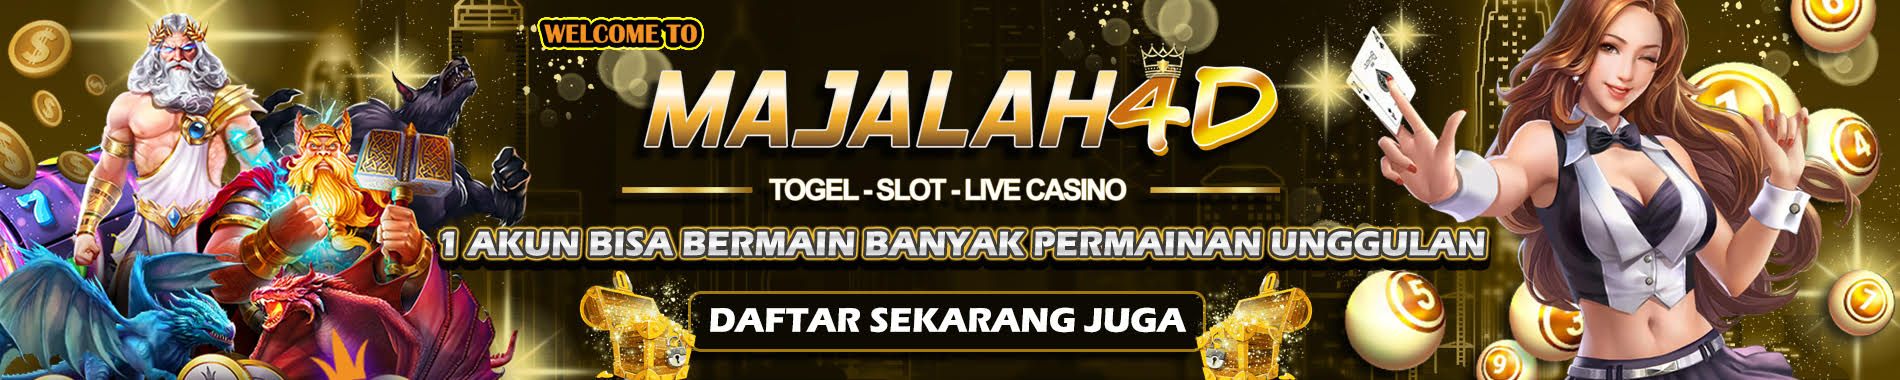 Situs Judi Slot online Majalah4D